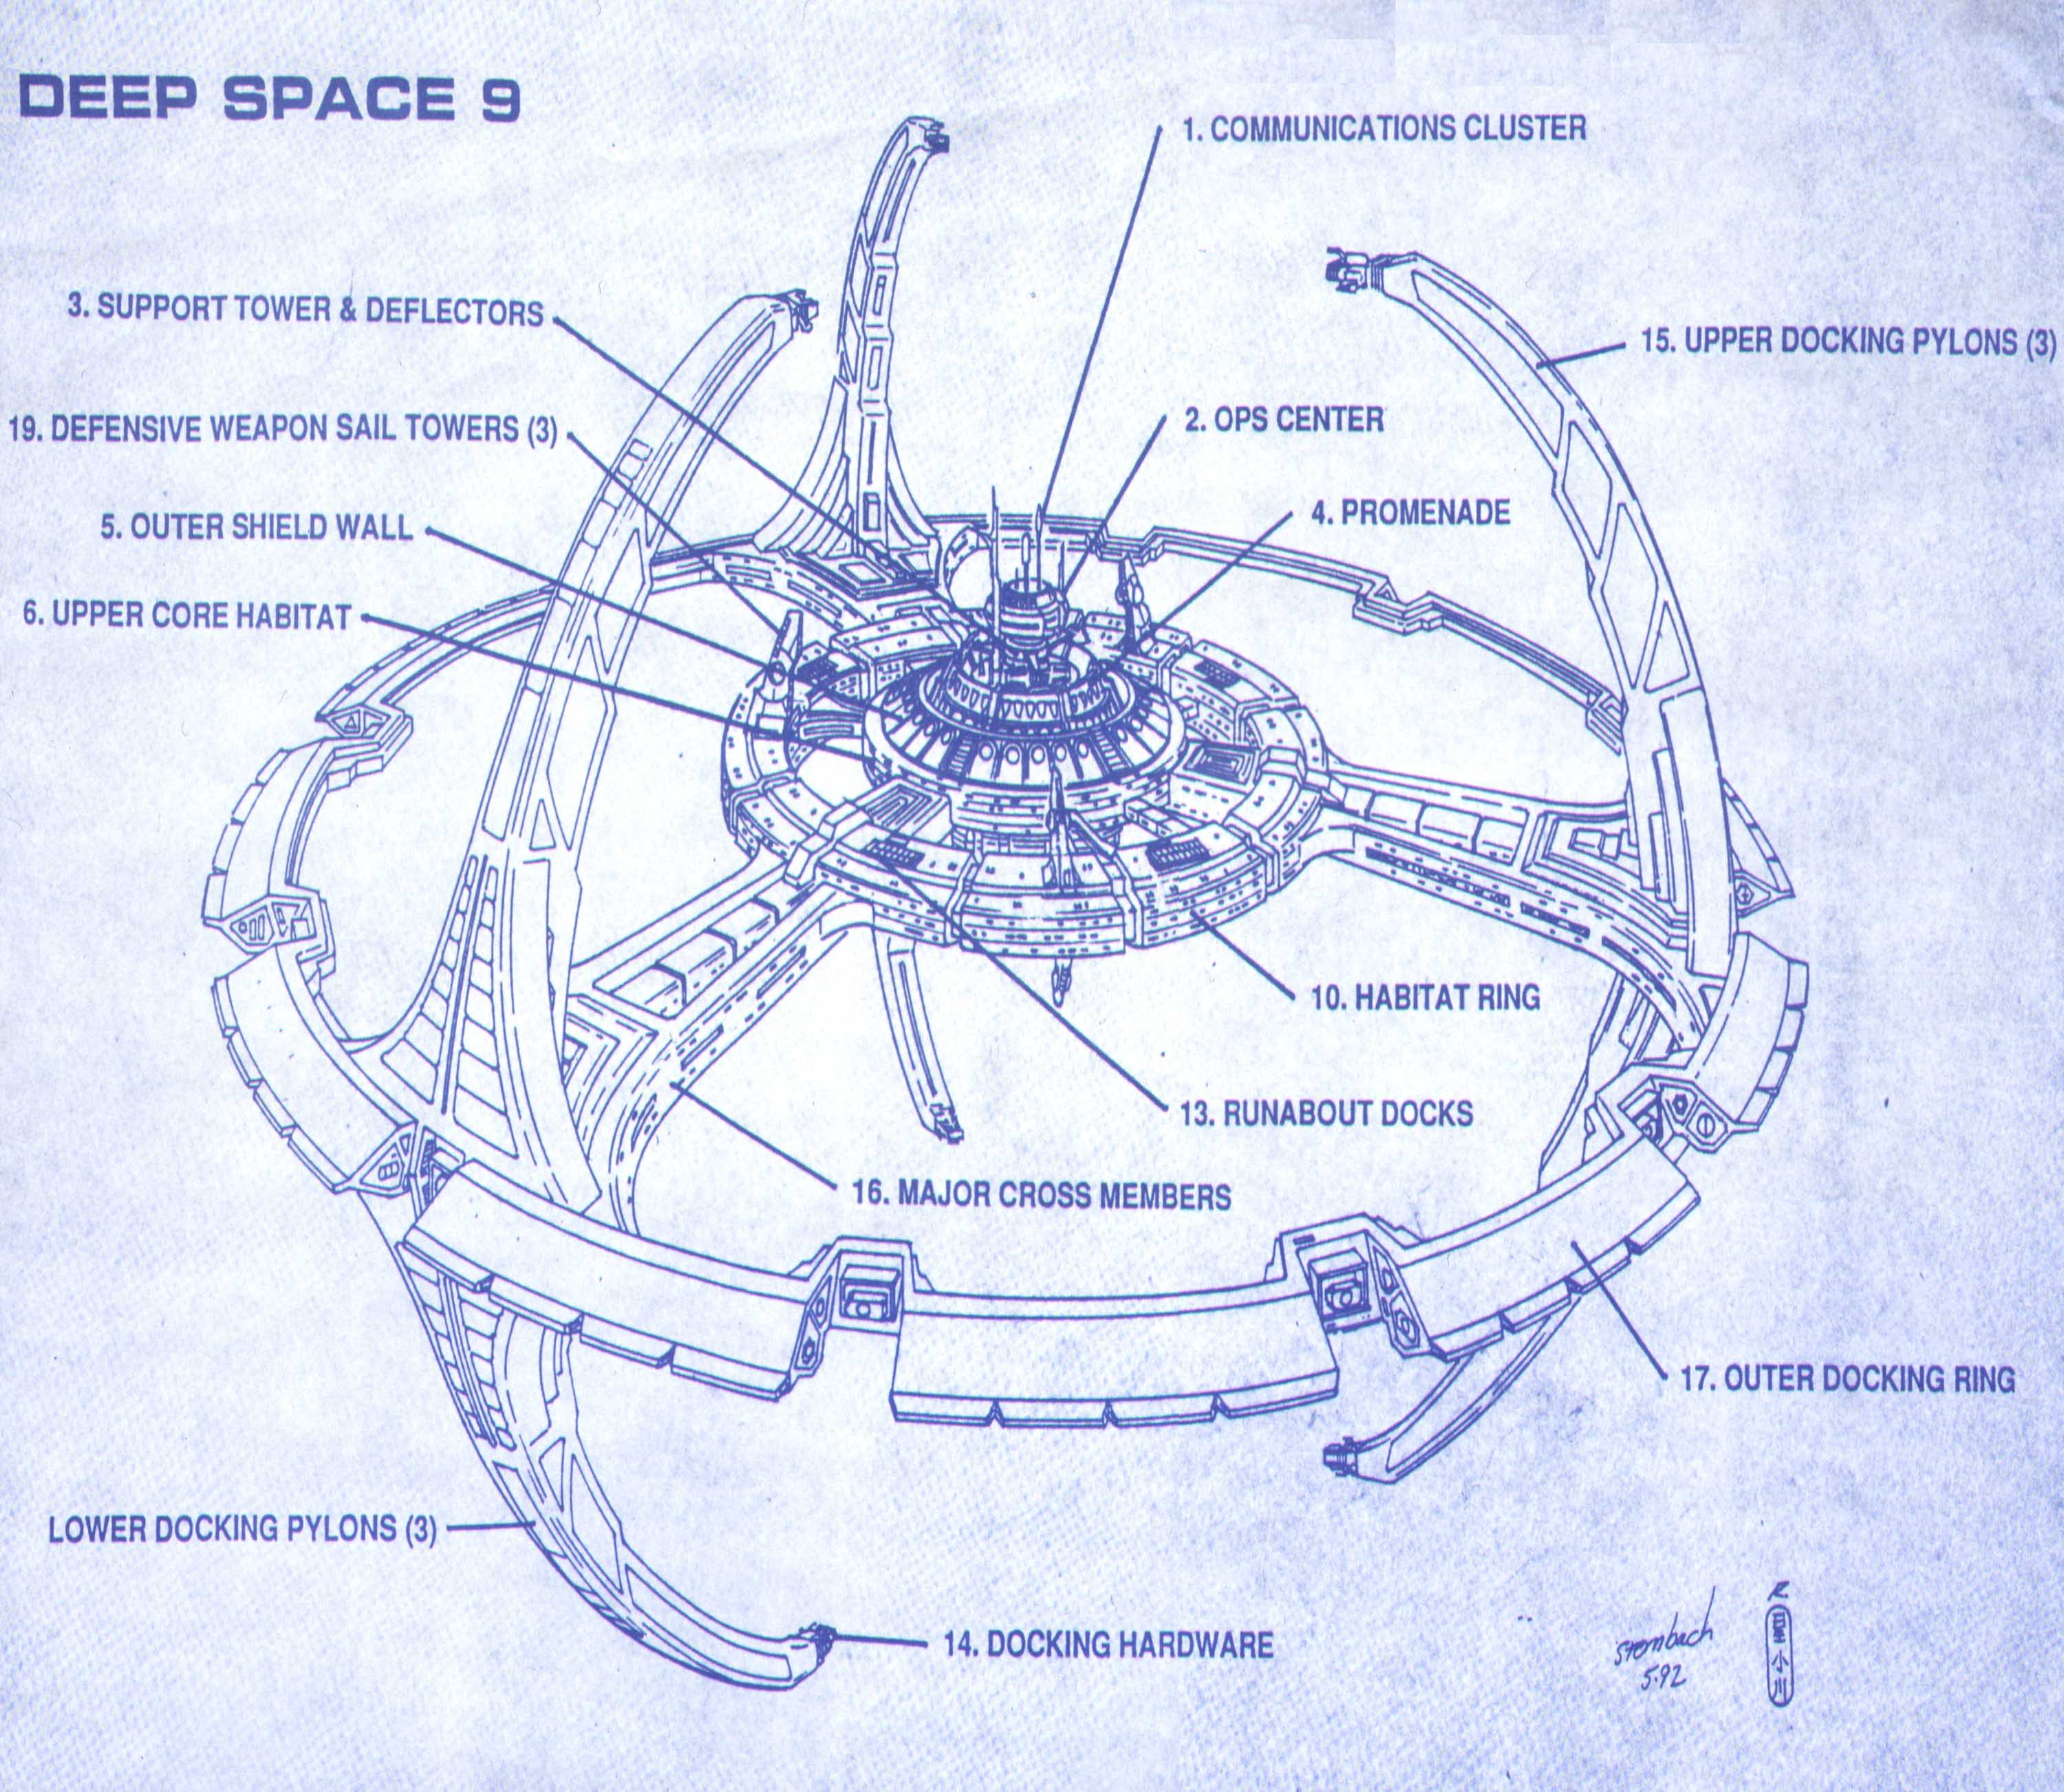 Star Trek Blueprints Deep Space Nine Concept Drawings